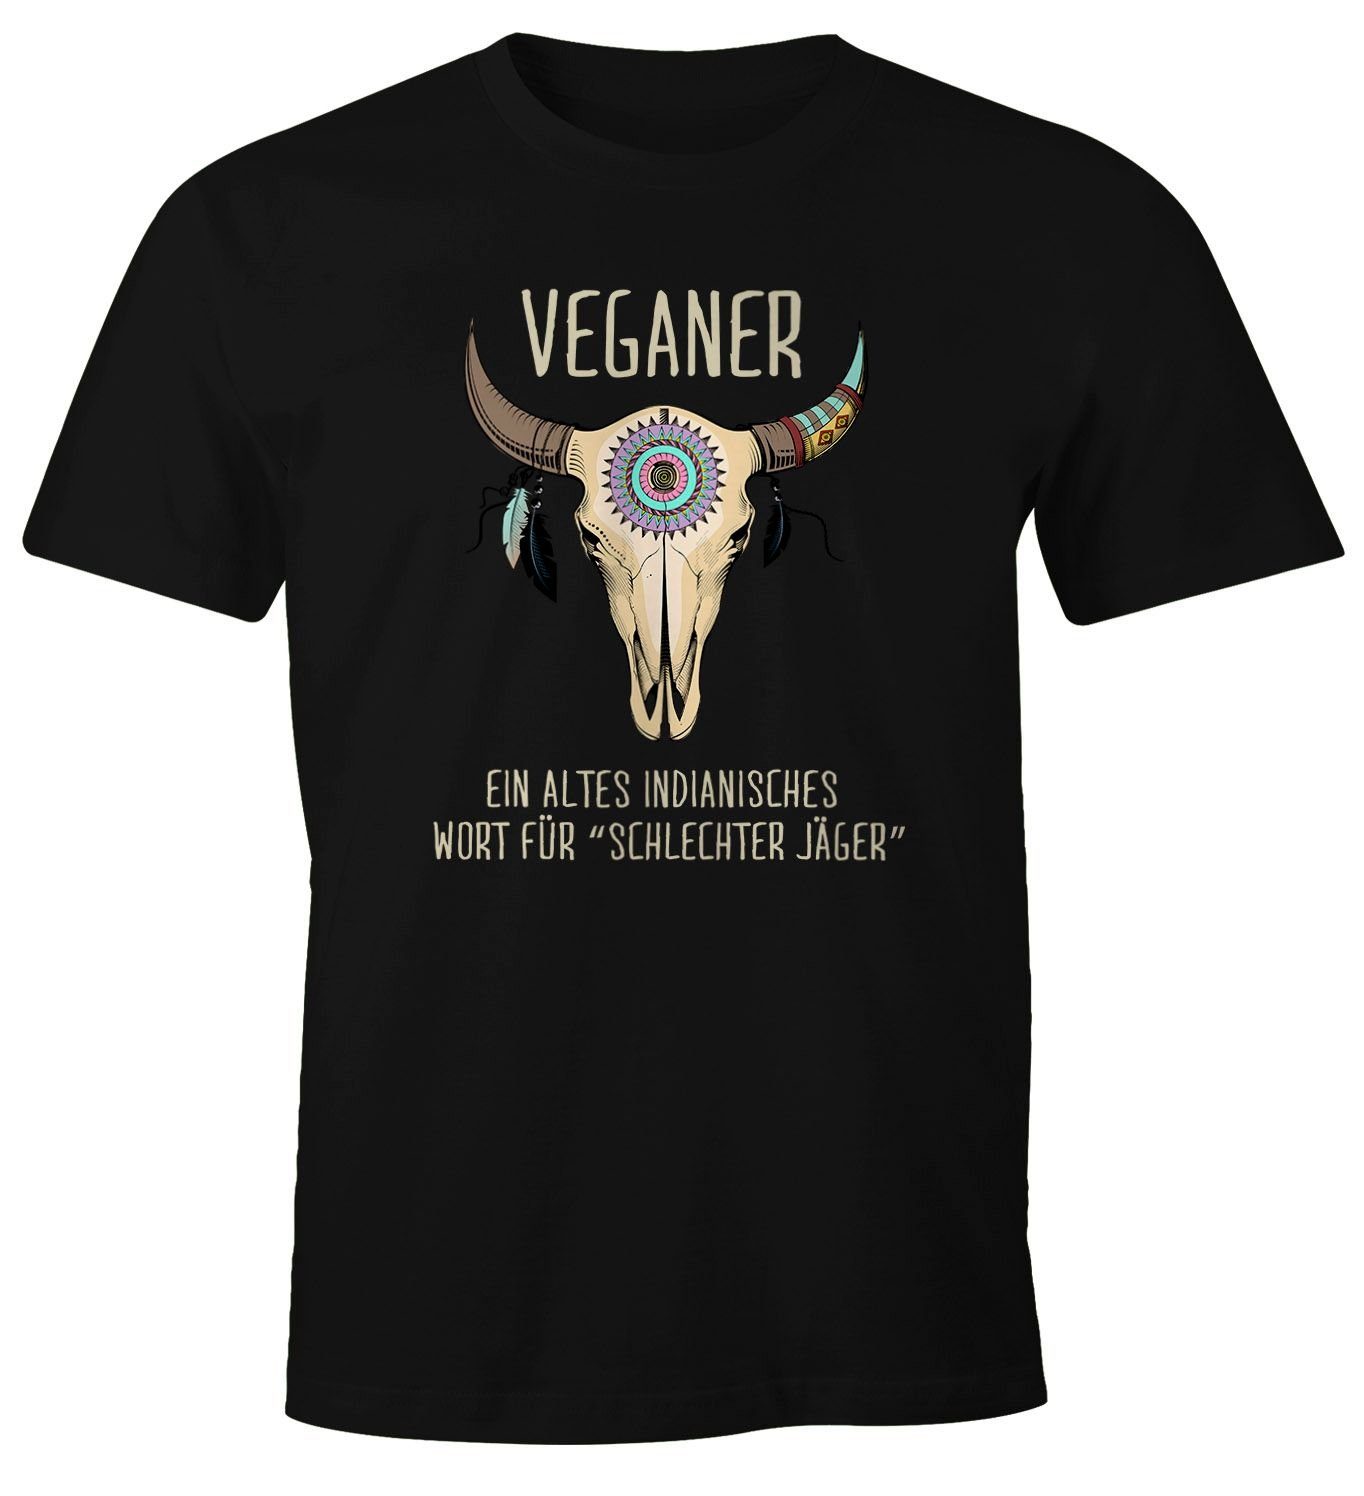 MoonWorks Print-Shirt Herren T-Shirt Vegetarier / Veganer Schlechter Jäger Spruch Skull lustig Fun-Shirt Moonworks® mit Print Veganer schwarz